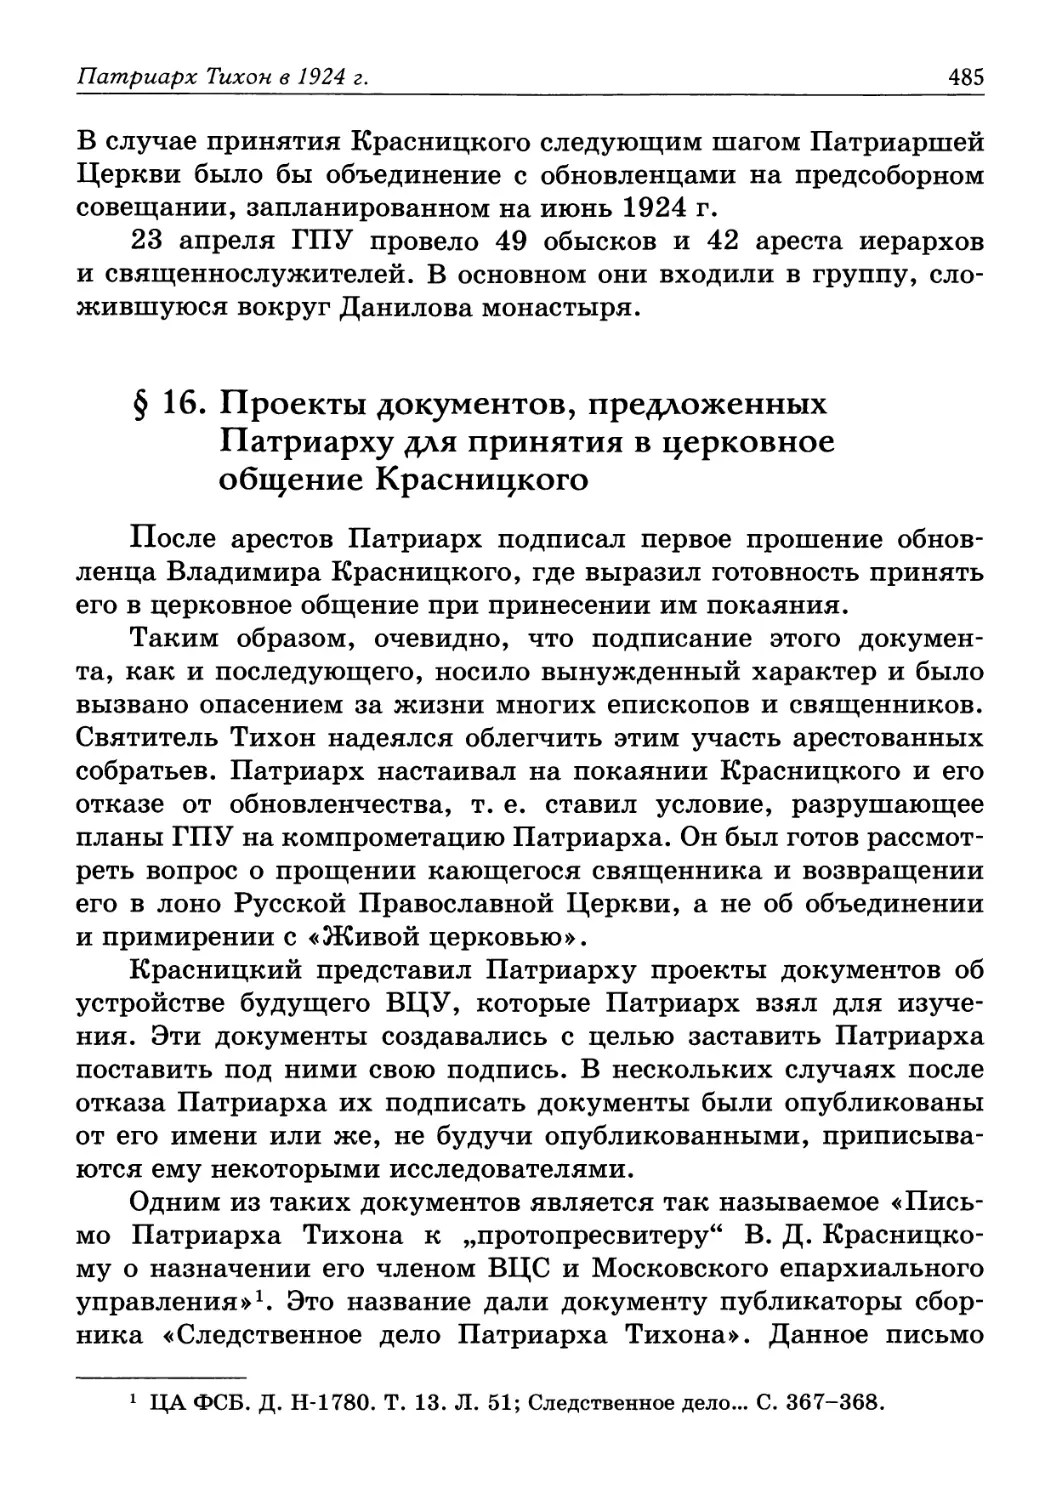 § 16. Проекты документов, предложенных Патриарху для принятия в церковное общение Красницкого